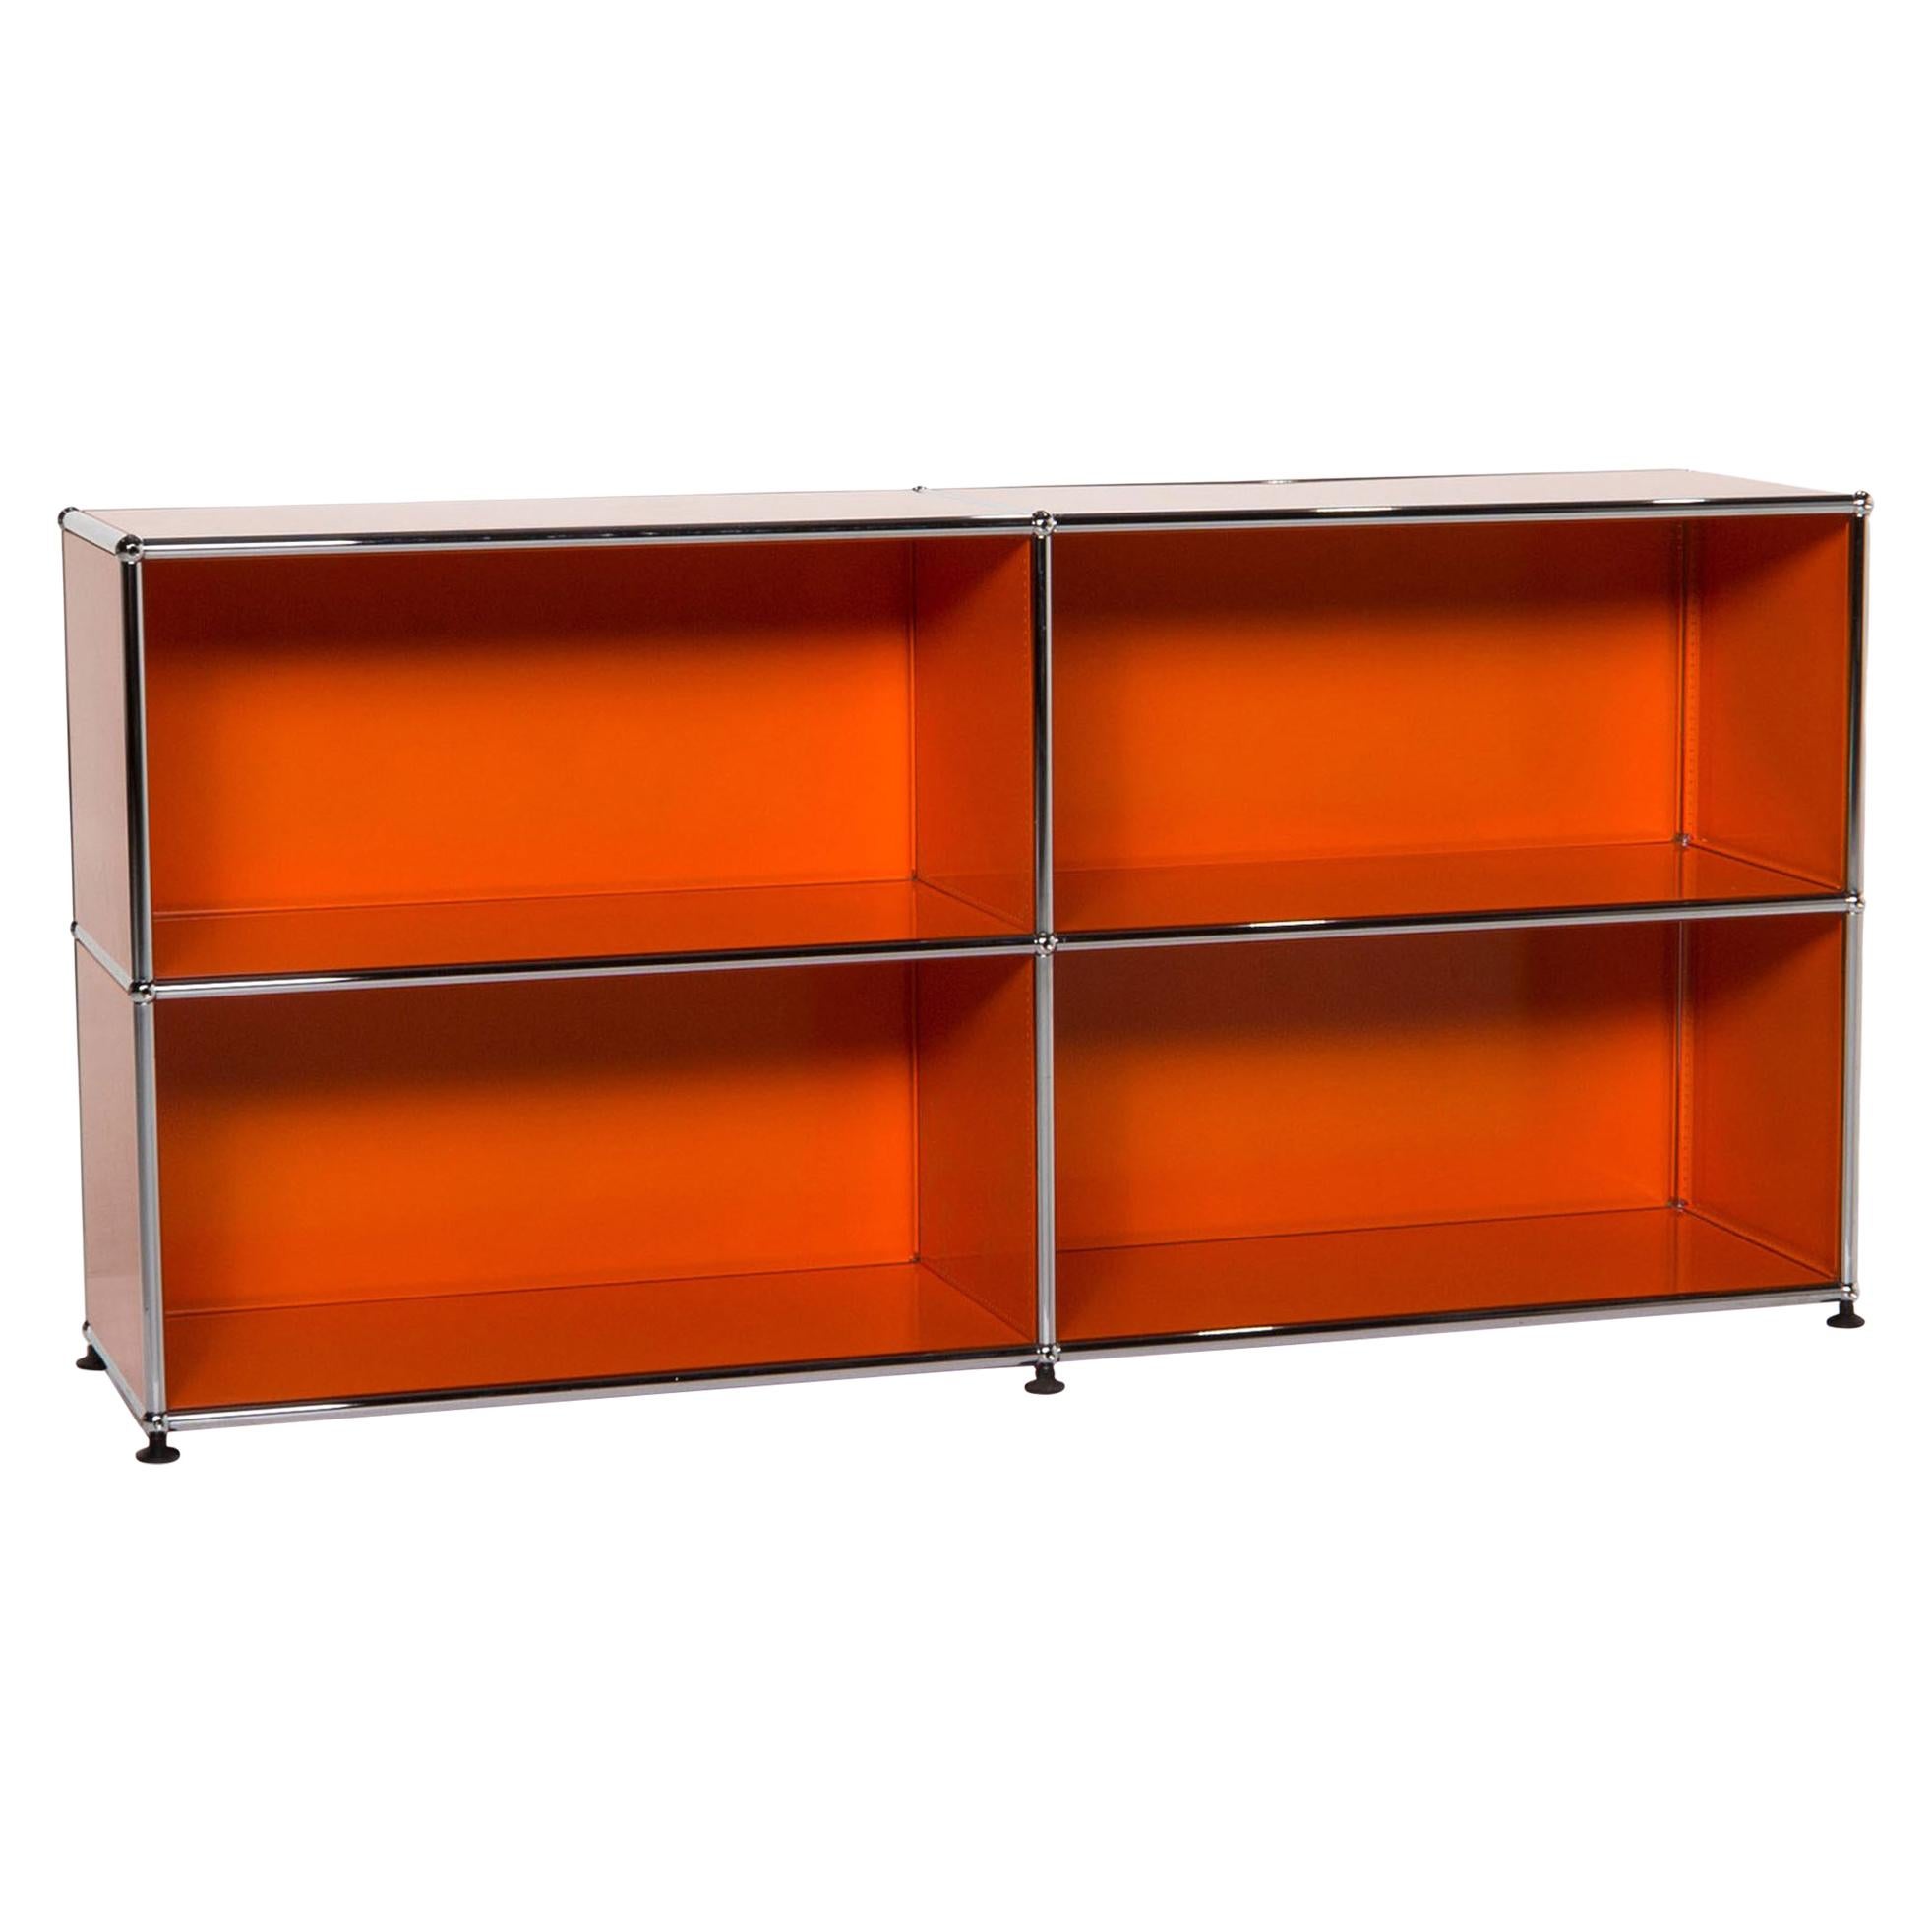 USM Haller Metal Sideboard Orange Office Furniture Shelf